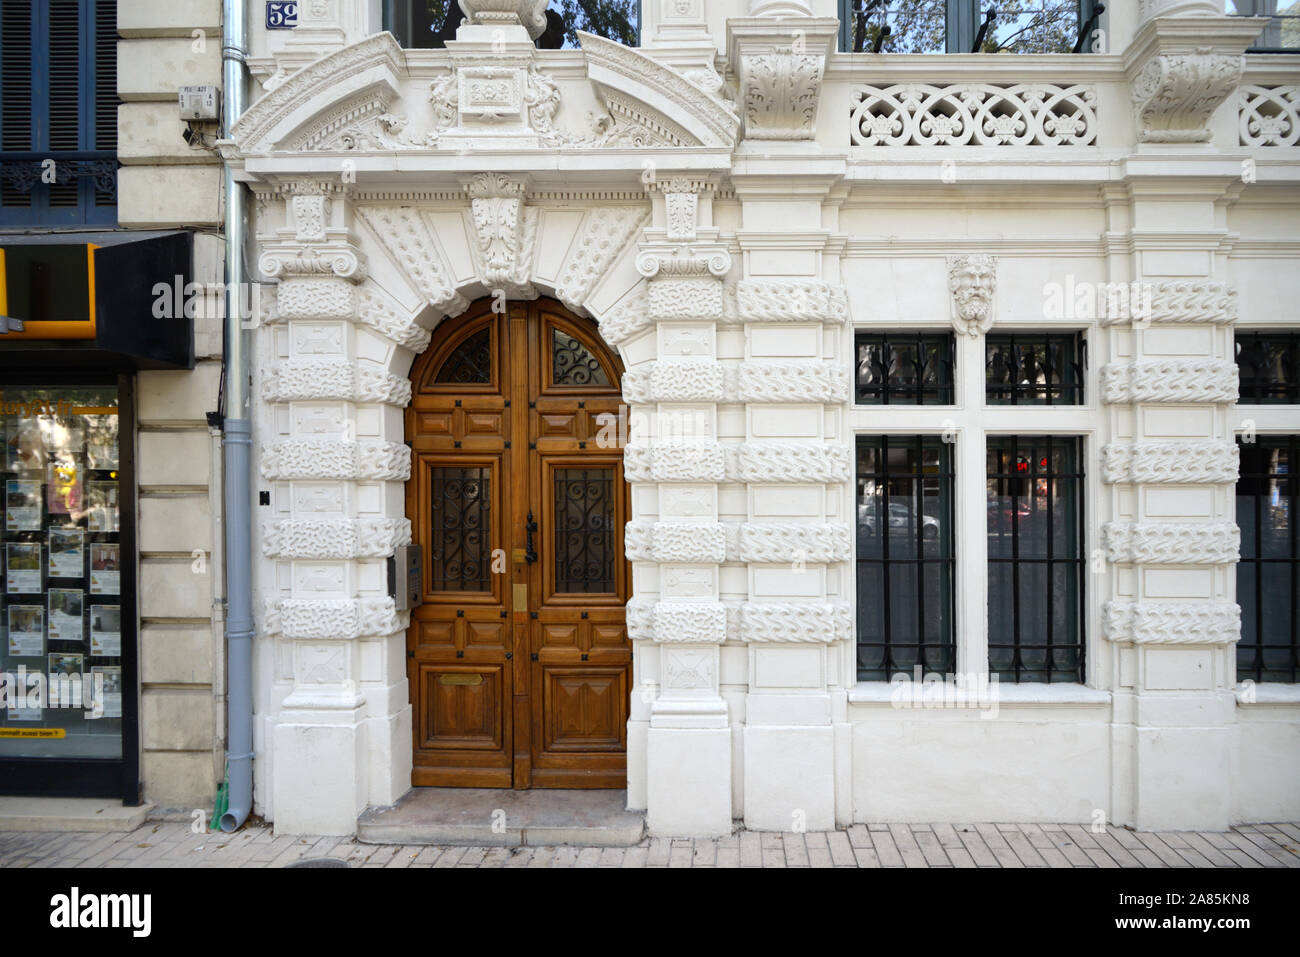 Barocke Eingang oder Tür von Maison Boulla, historische Gebäude oder Stadthaus, c 19., Belle Epoque, Renaissance & Barock Einflüsse Nimes. Stockfoto